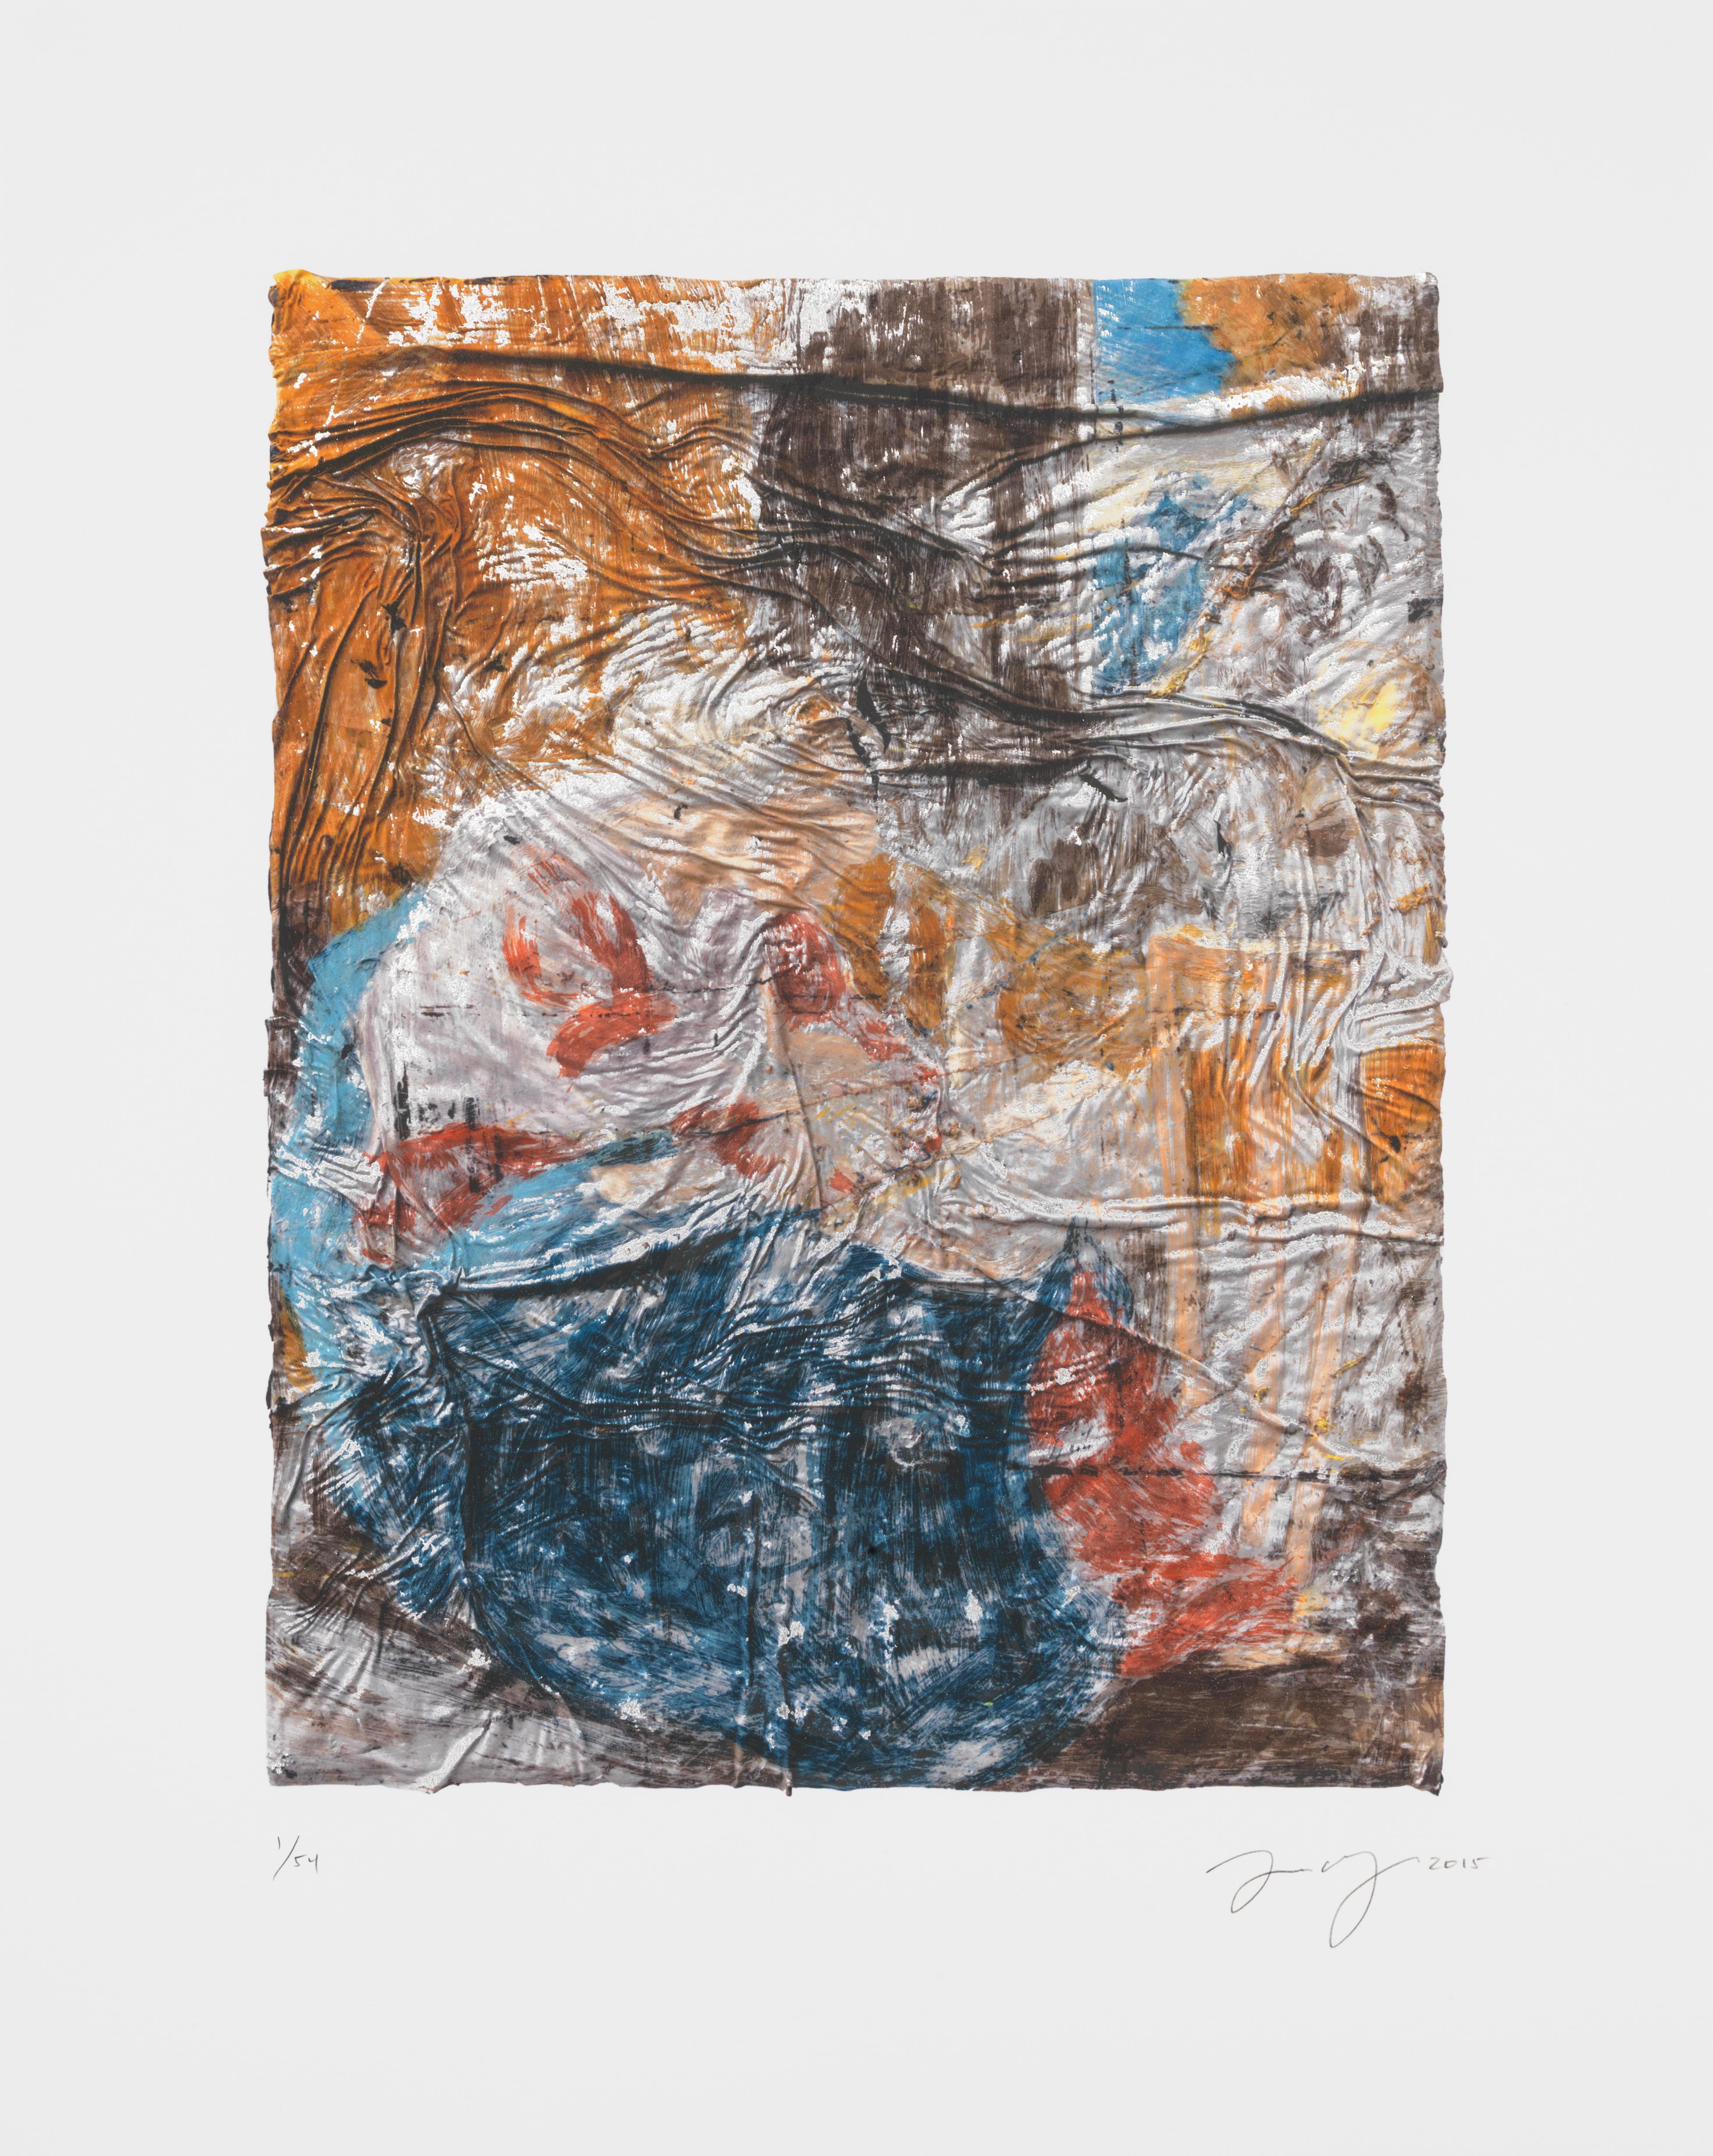 Angel Otero ist bekannt für seine Ölgemälde mit auslaufenden Farbfeldern, die durch Knicke und Falten topografische Strukturen erzeugen. In dieser visuell überzeugenden Ausgabe, Untitled (SK-PH), hat der Künstler eine seiner Kompositionen in einen